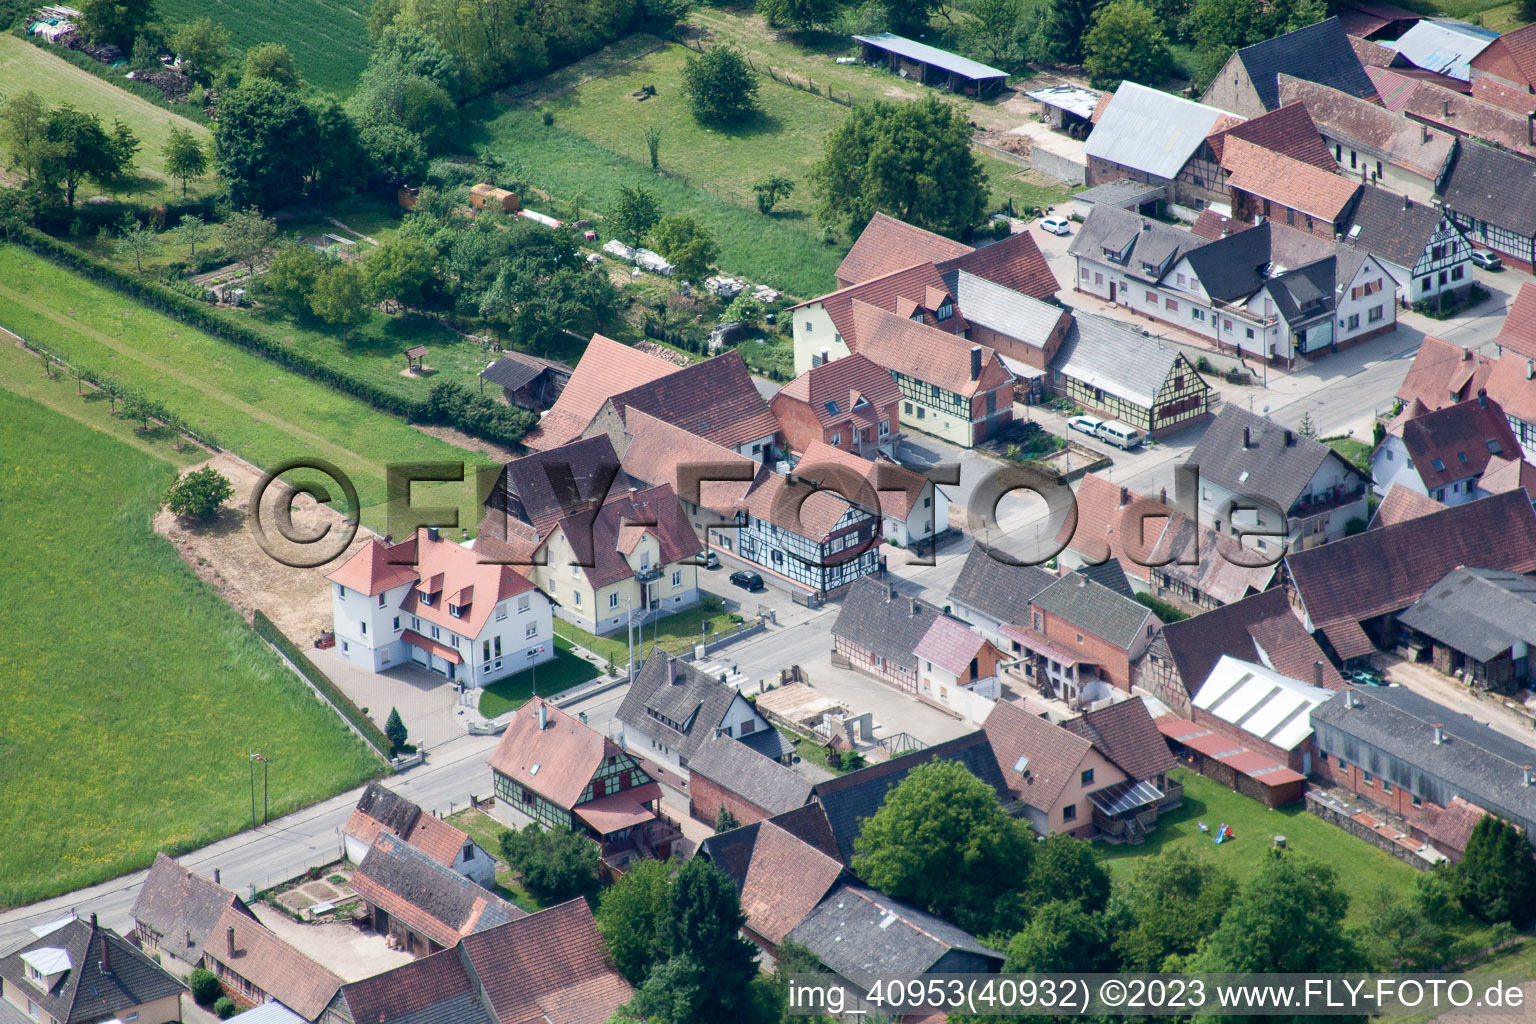 Scheibenhard im Bundesland Bas-Rhin, Frankreich aus der Luft betrachtet